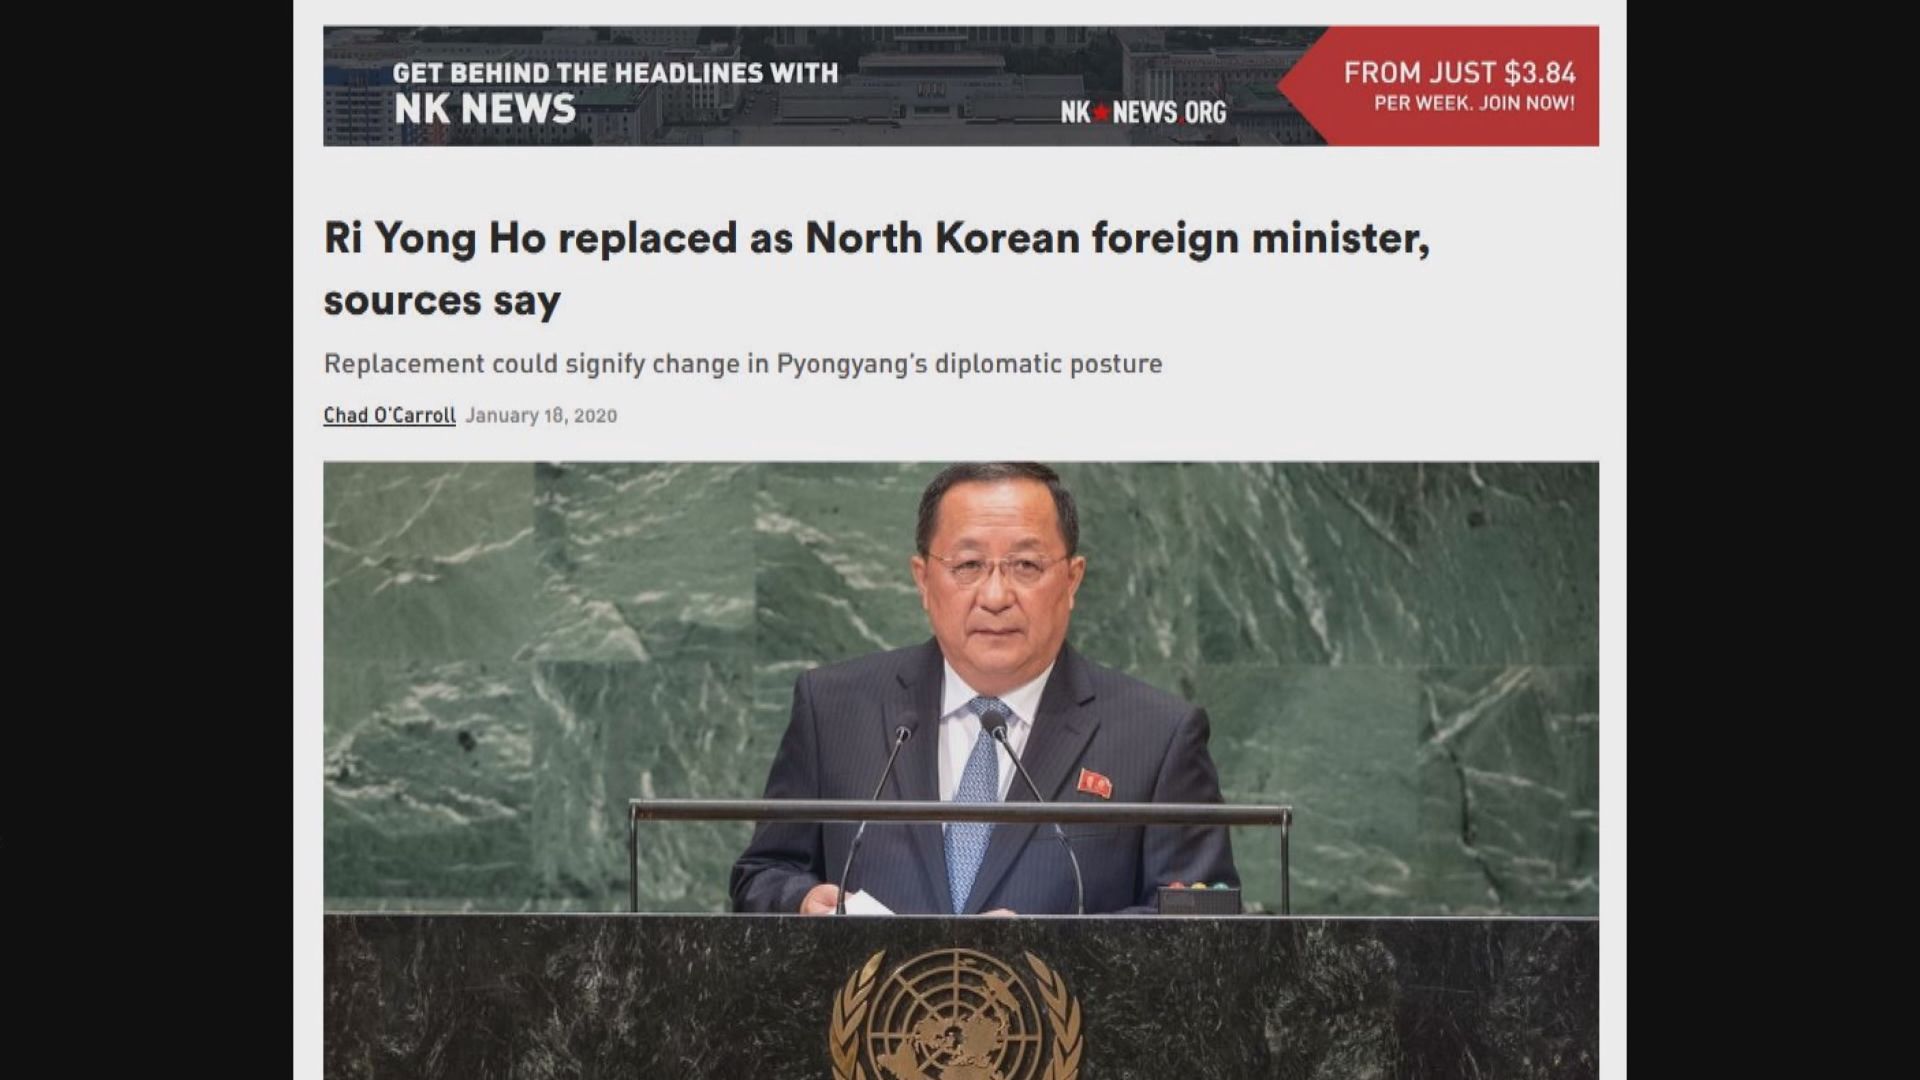 消息指北韓外長李容浩已被撤職